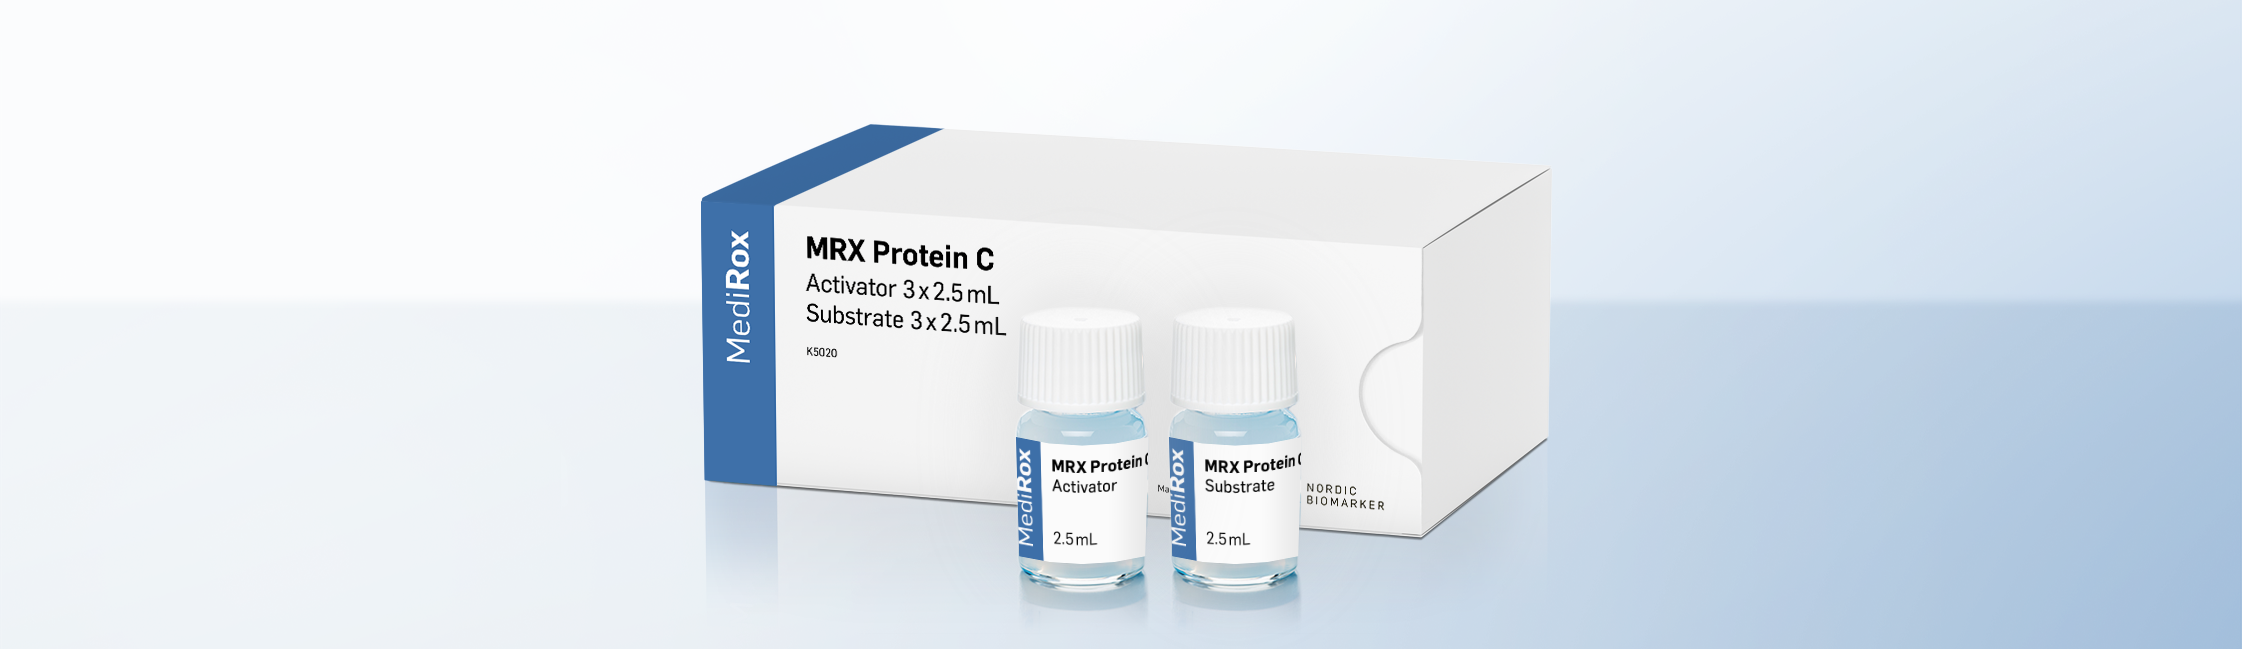 MRX Protein C